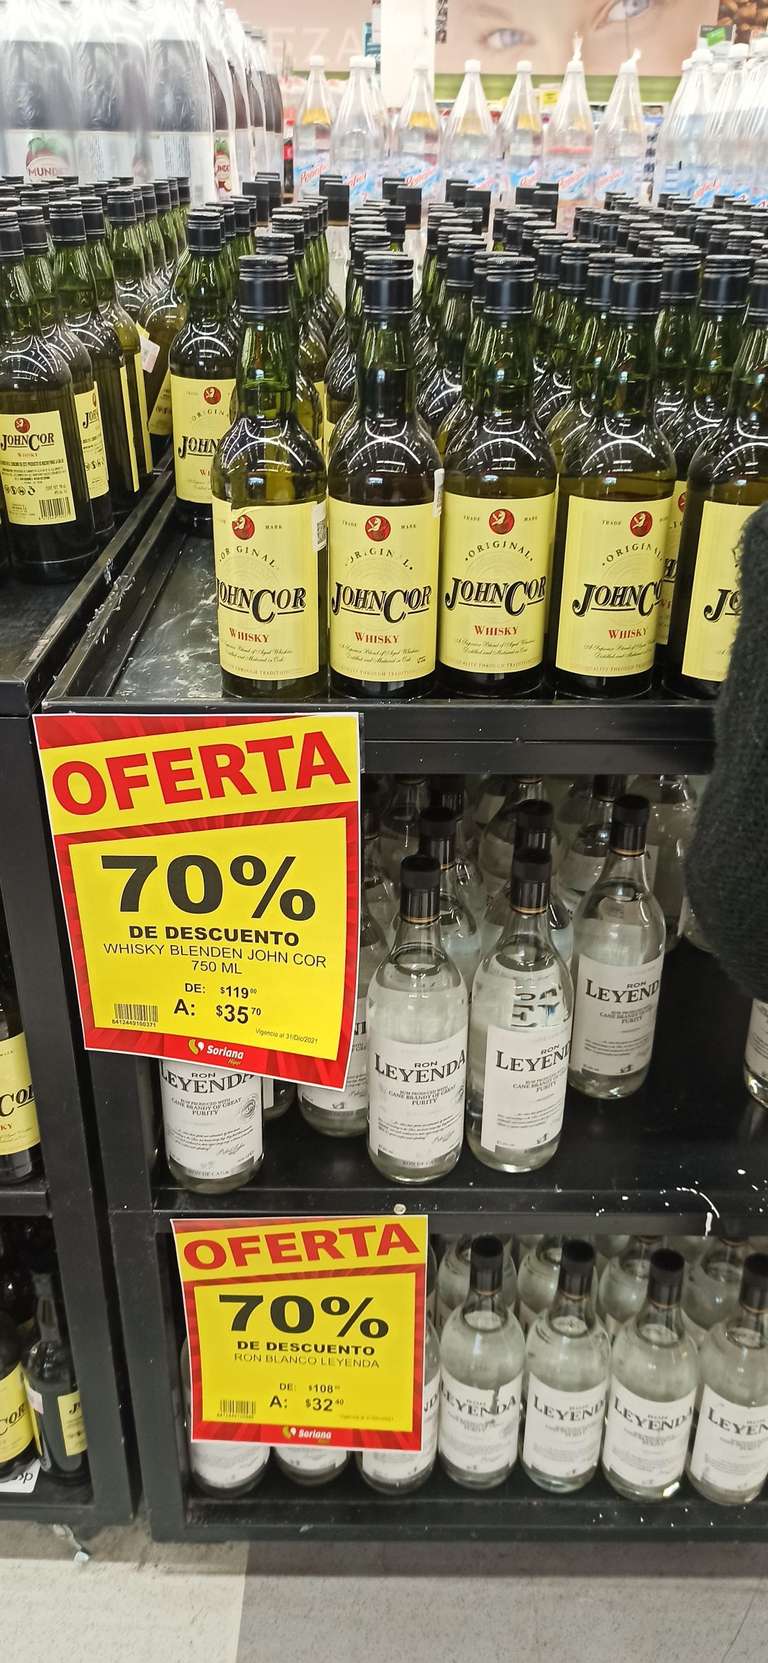 Soriana Mega Whisky Jonh Cor y Ron Leyenda, el segundo a mitad de precio